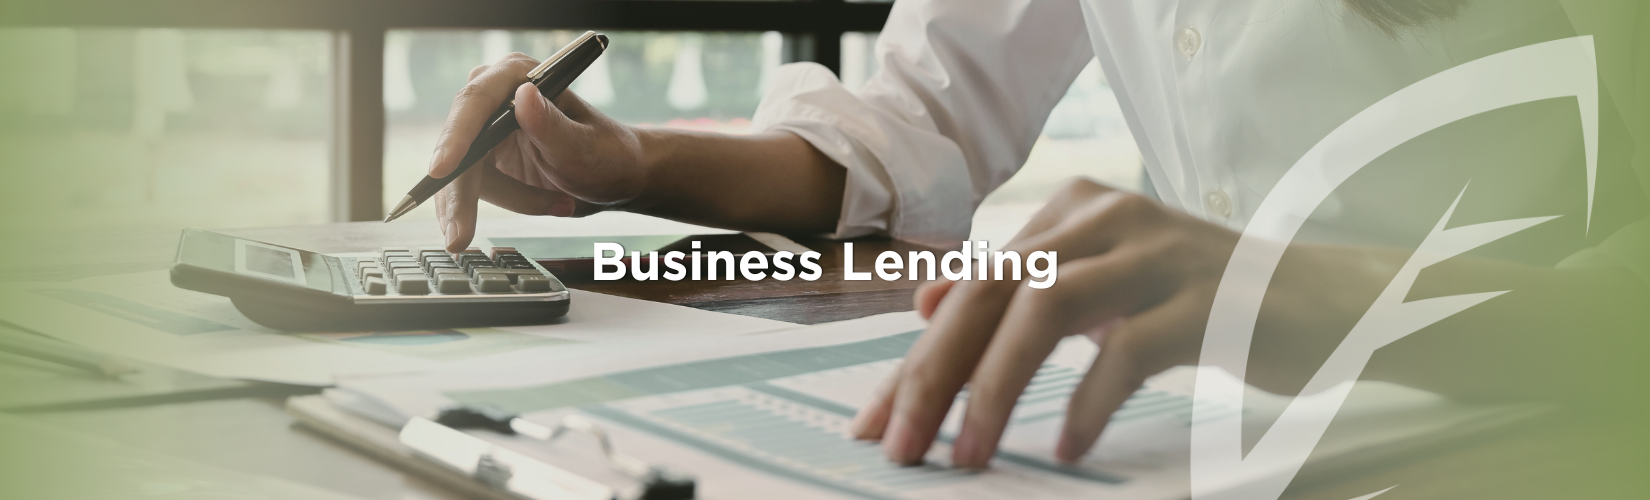 Business Lending